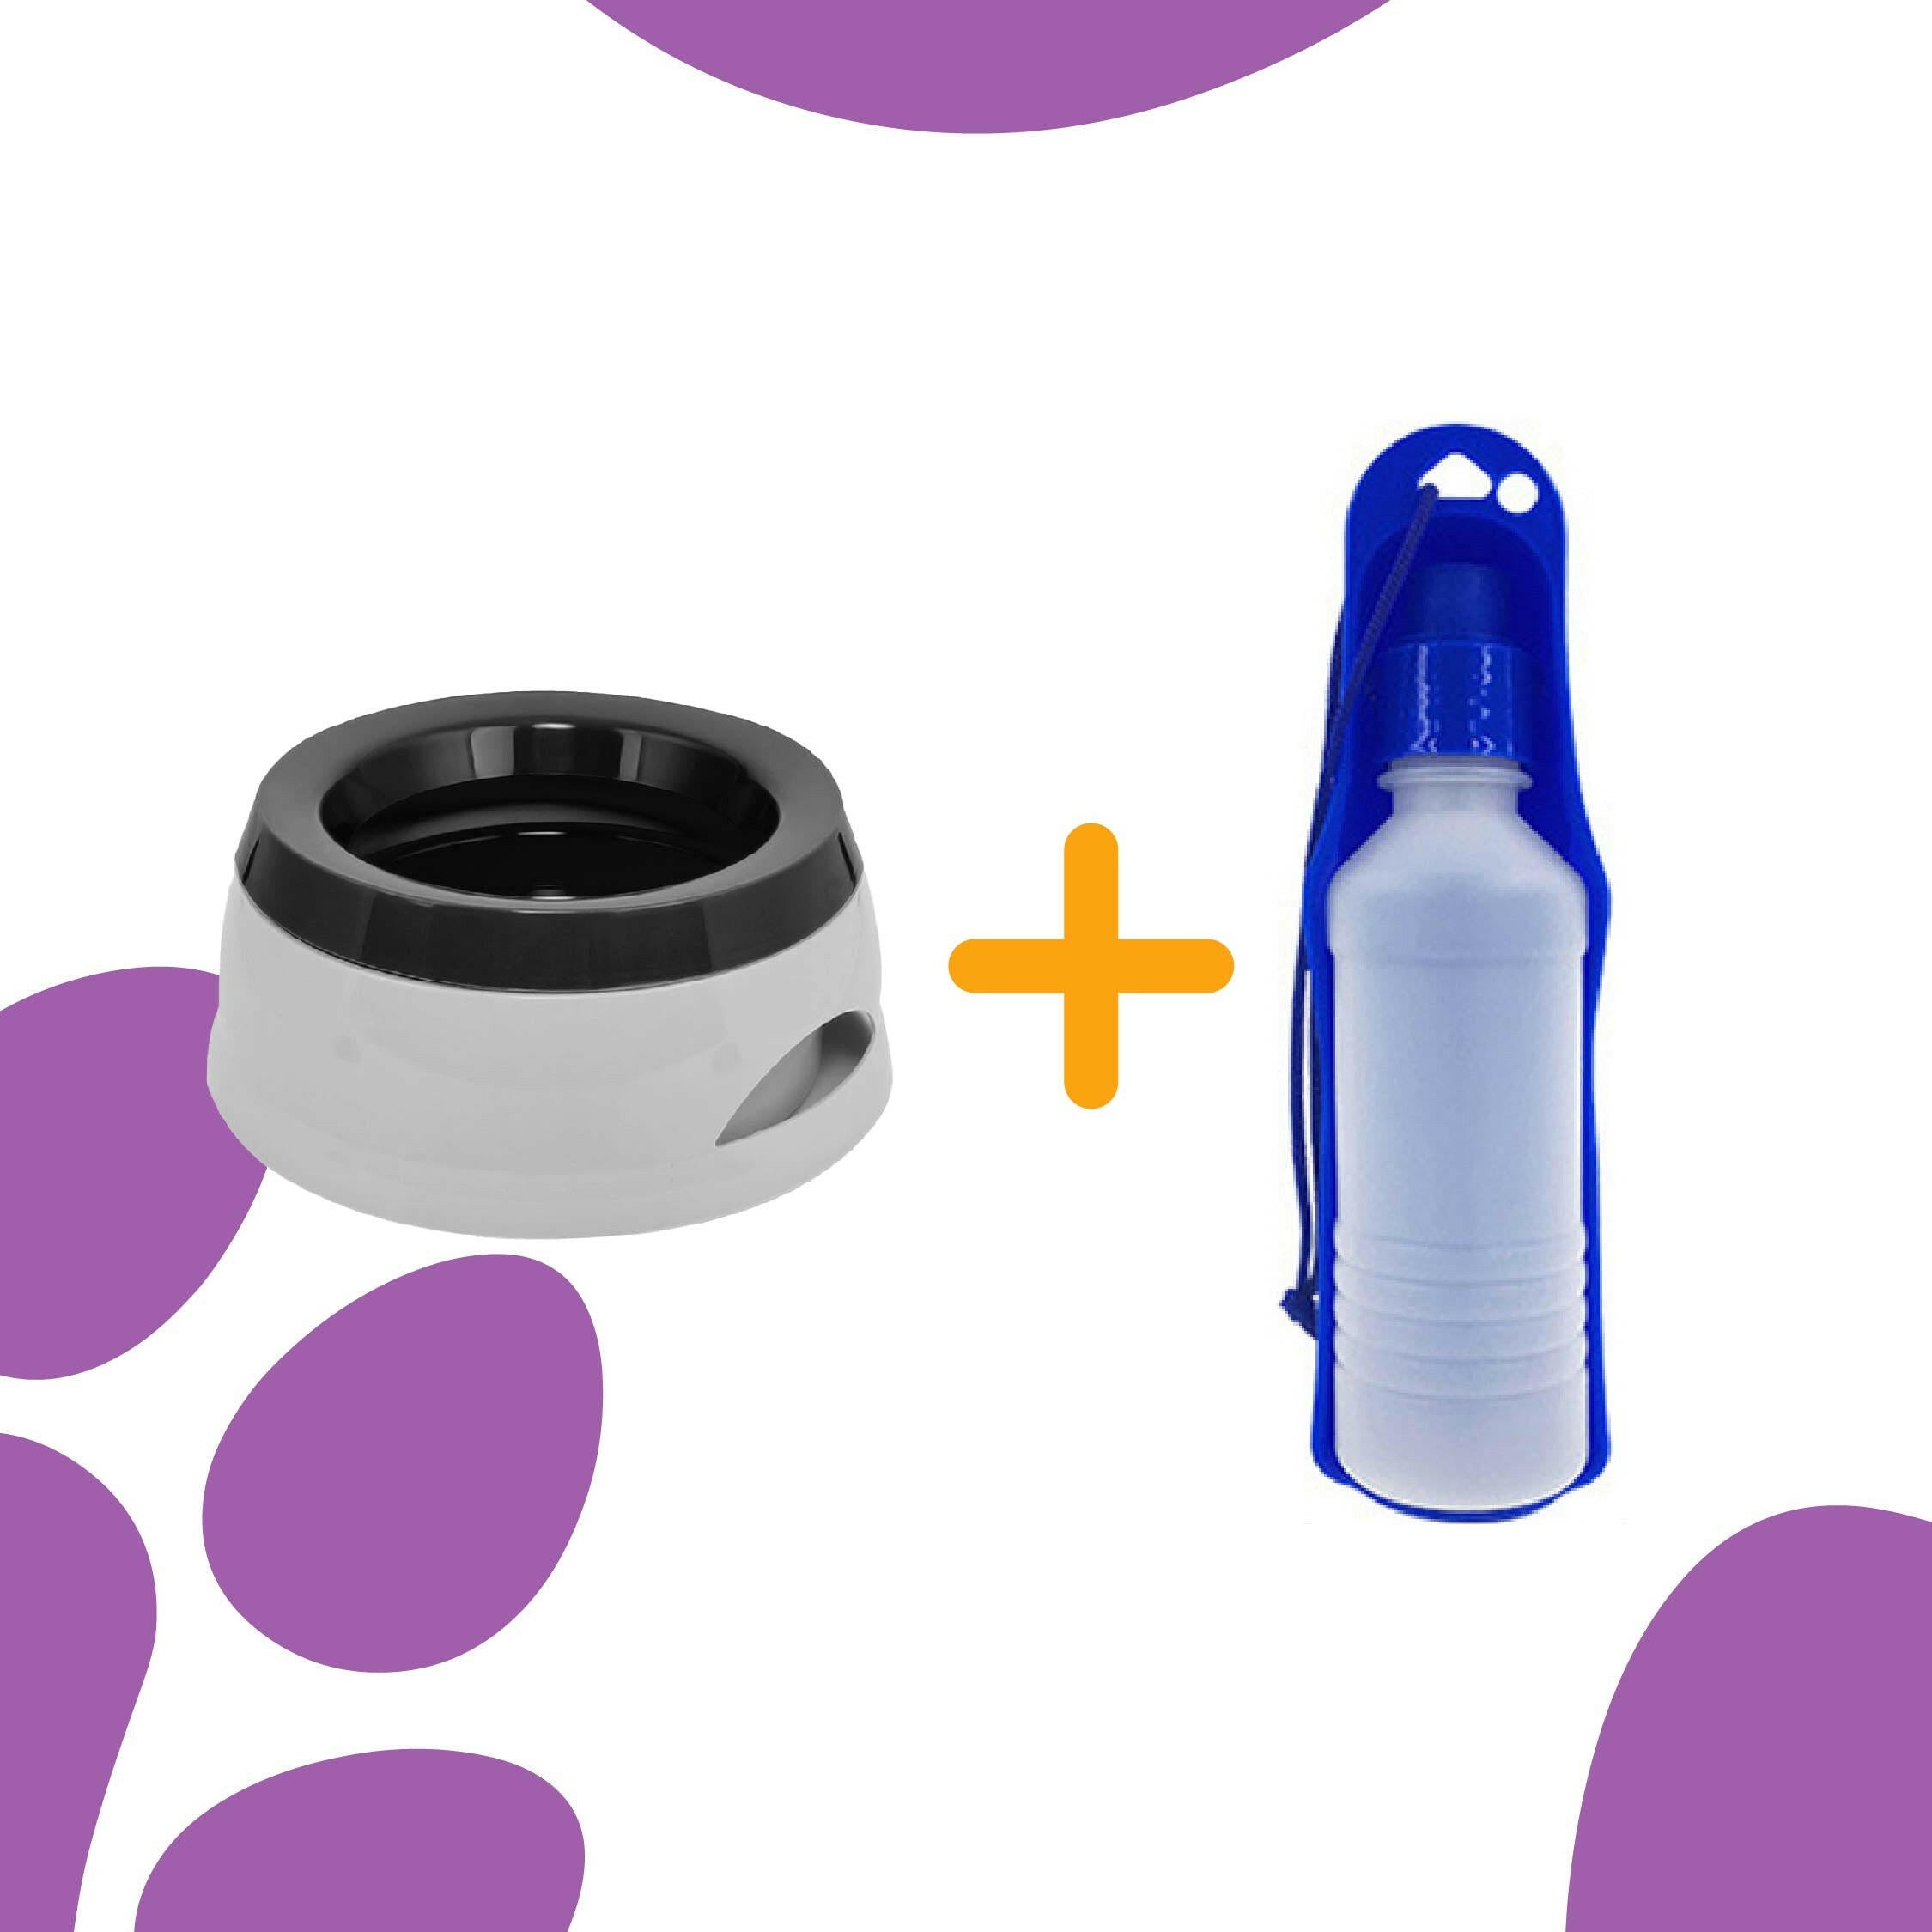 Smart Pet Bowl Slow Feeder, and Non-Slip Design, Bonus Water Bottle Feeder - No More Spills!